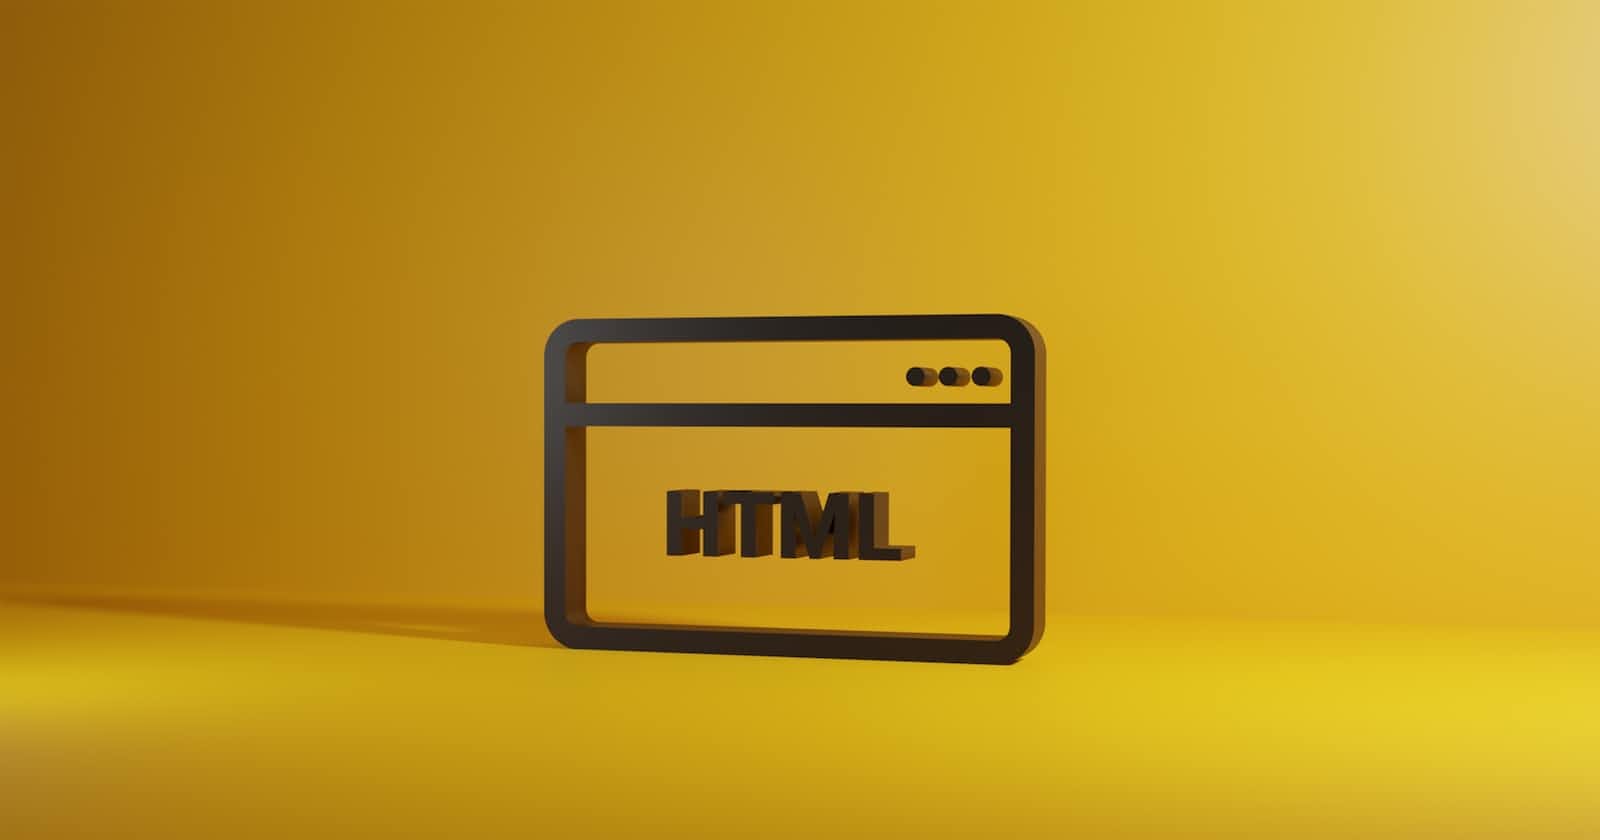 History Of HTML.